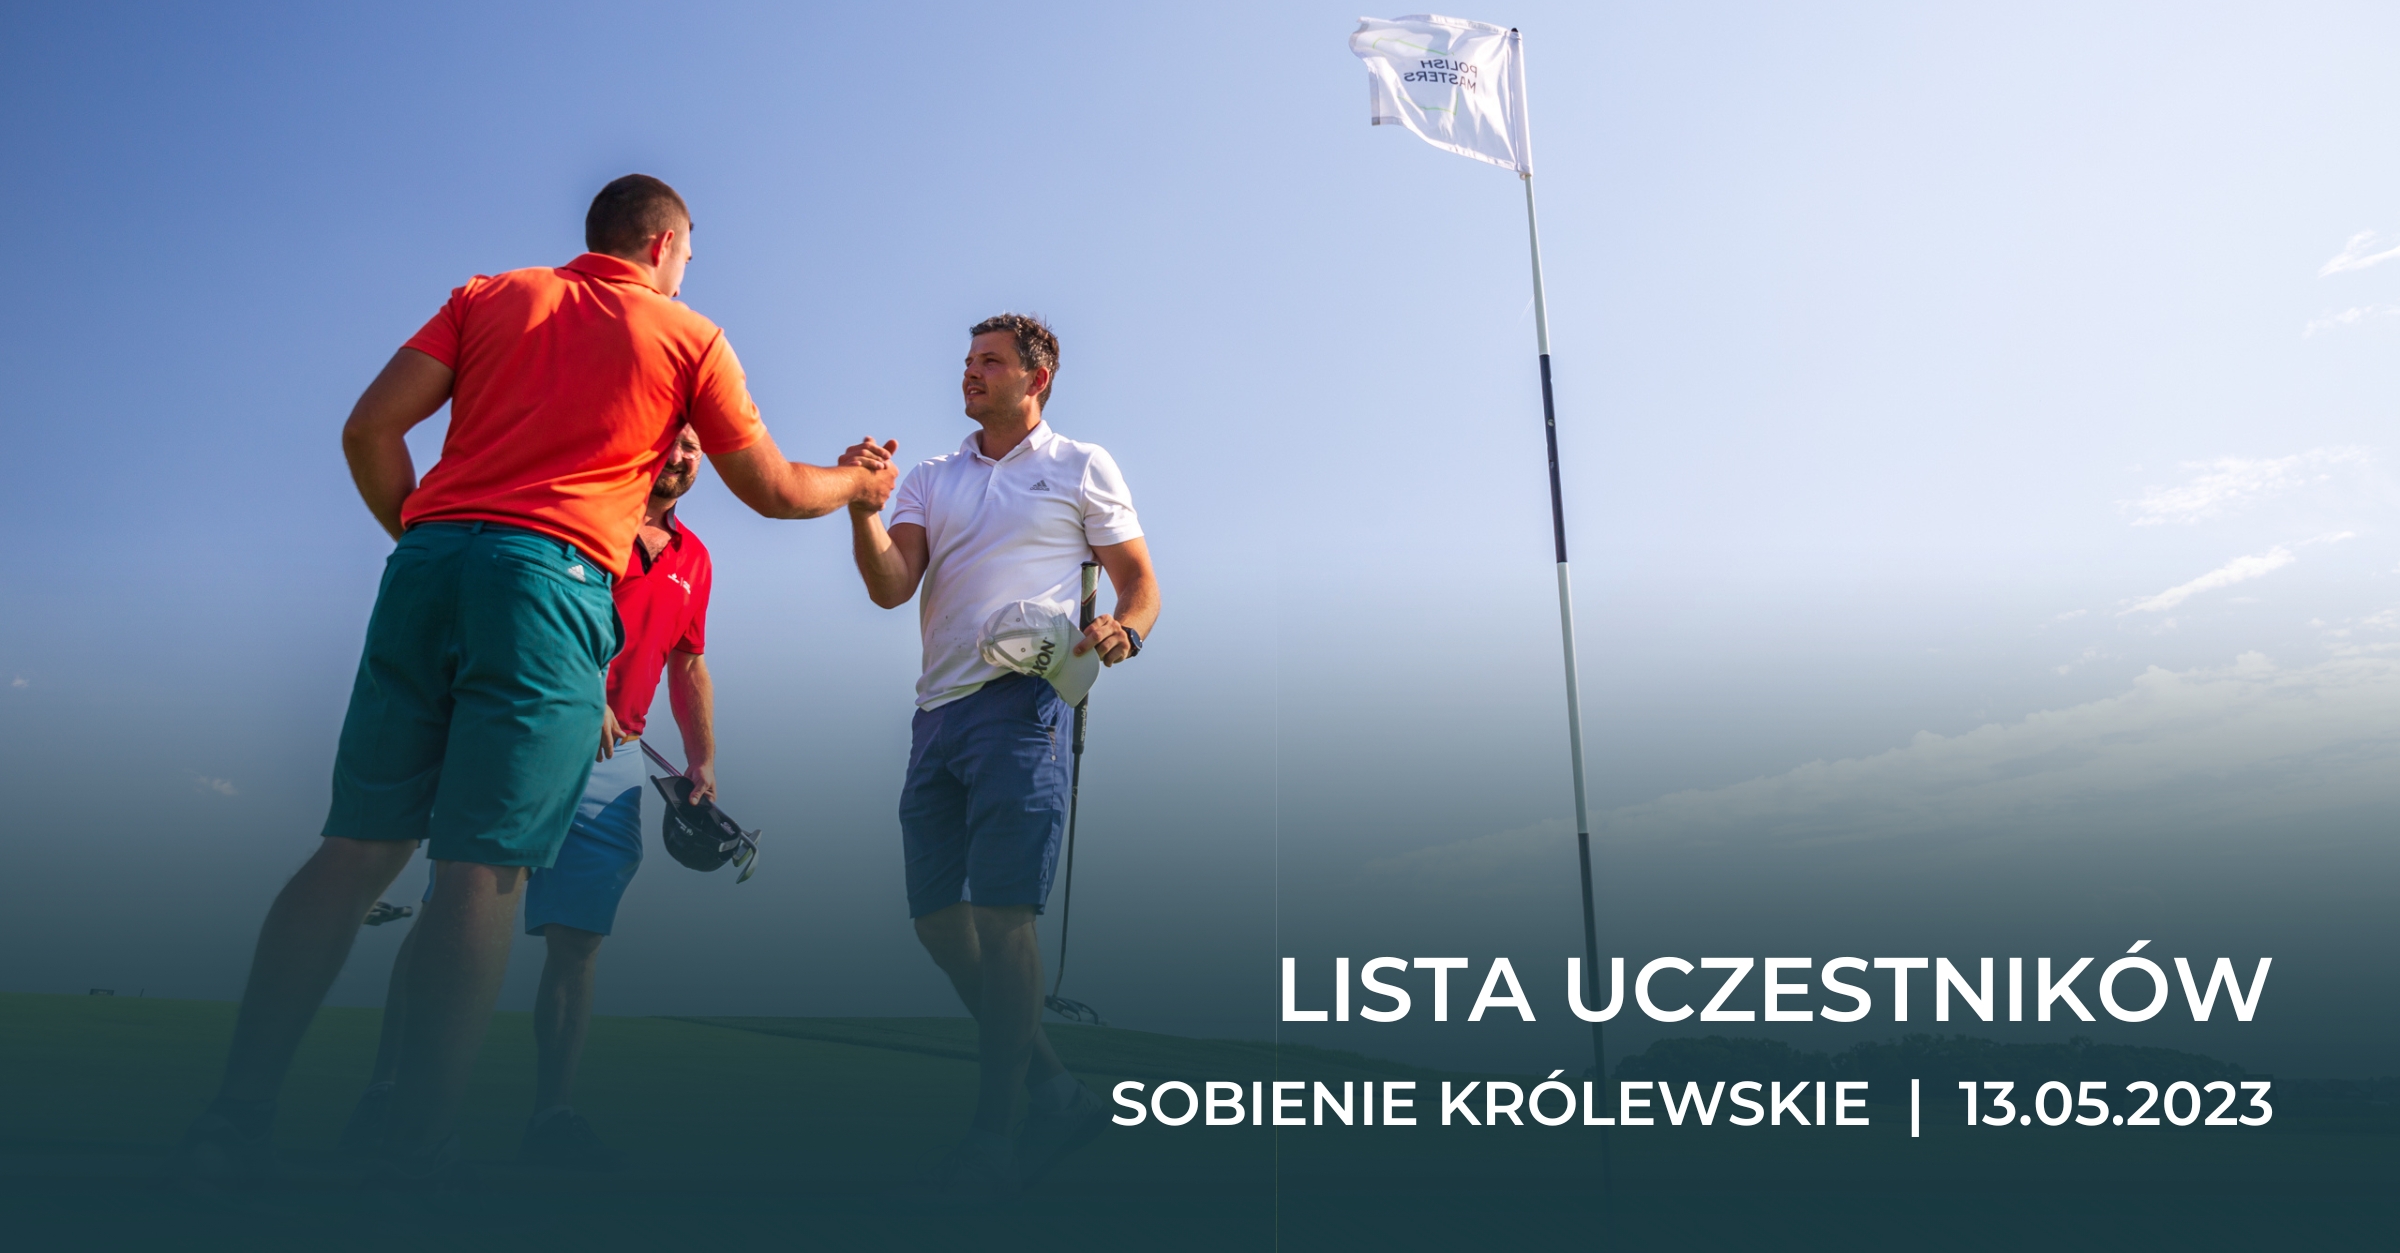 Lista uczestników i informacje – Polish Masters 2023 – Sobienie Królewskie